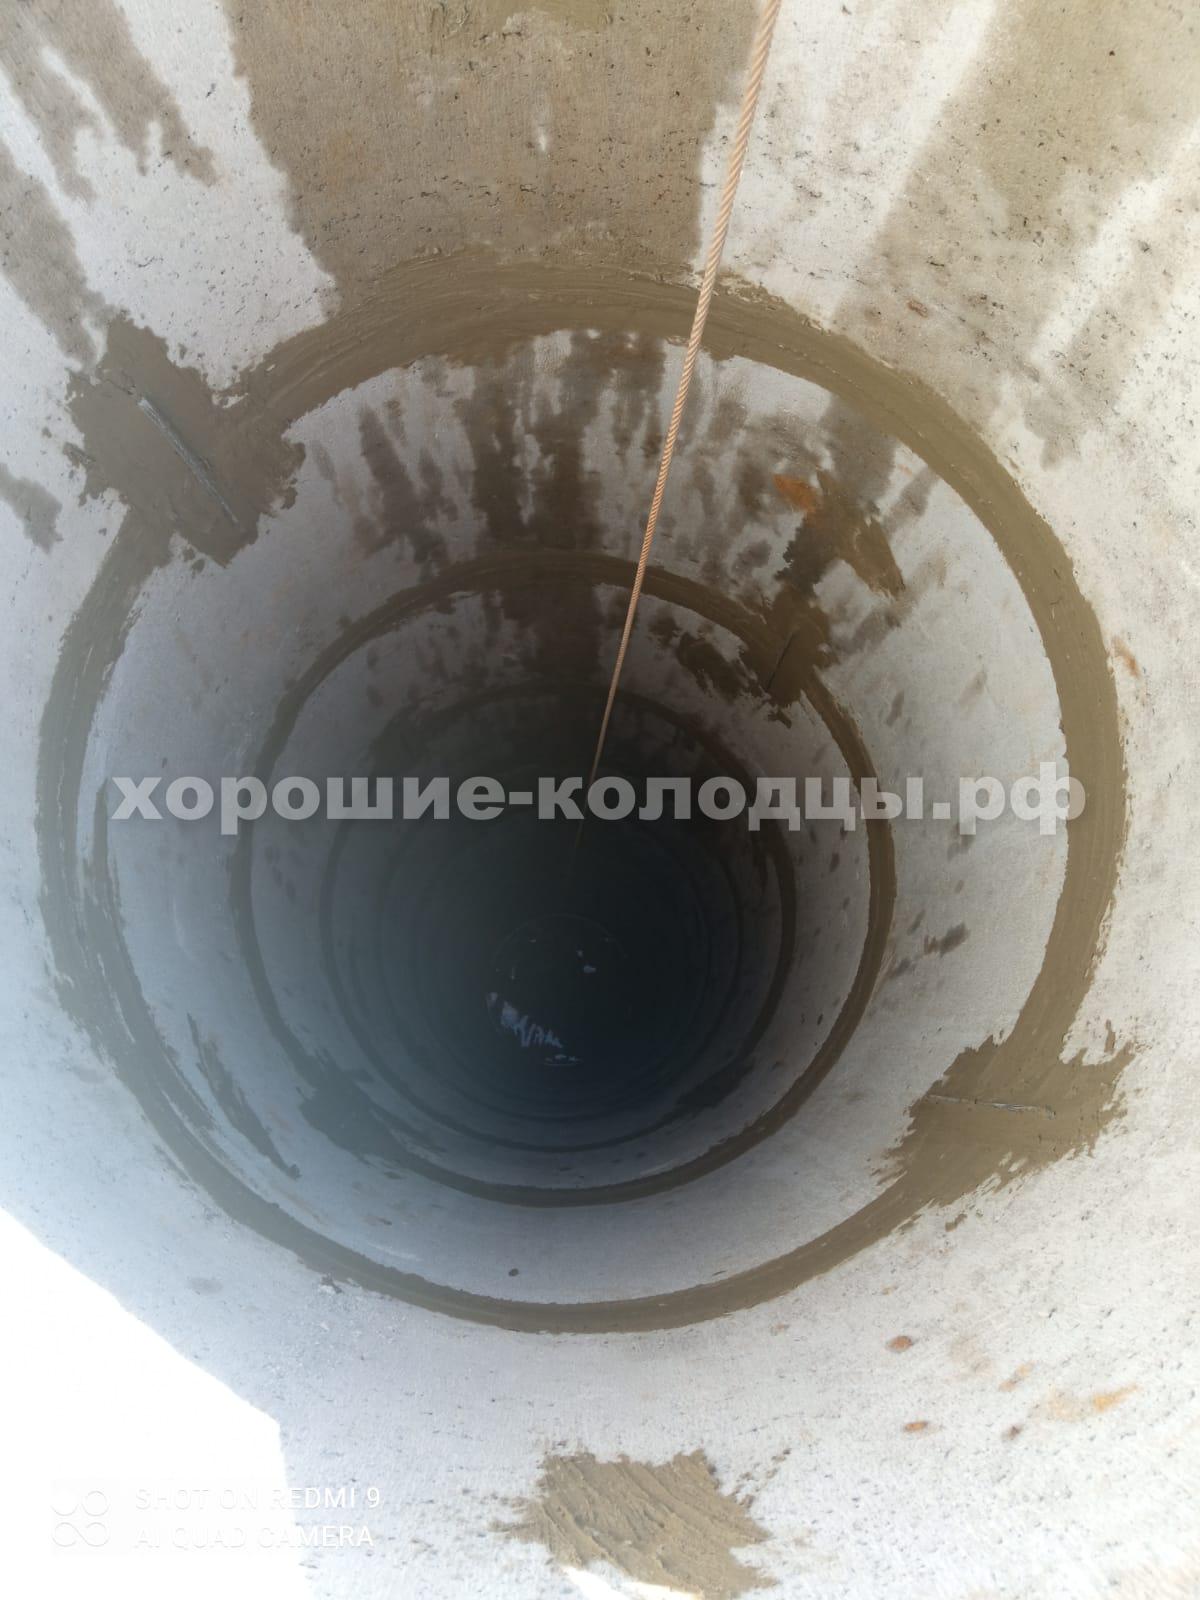 Колодец на воду 13 колец в СНТ Малиновка, Истринский р-н, Подмосковье.